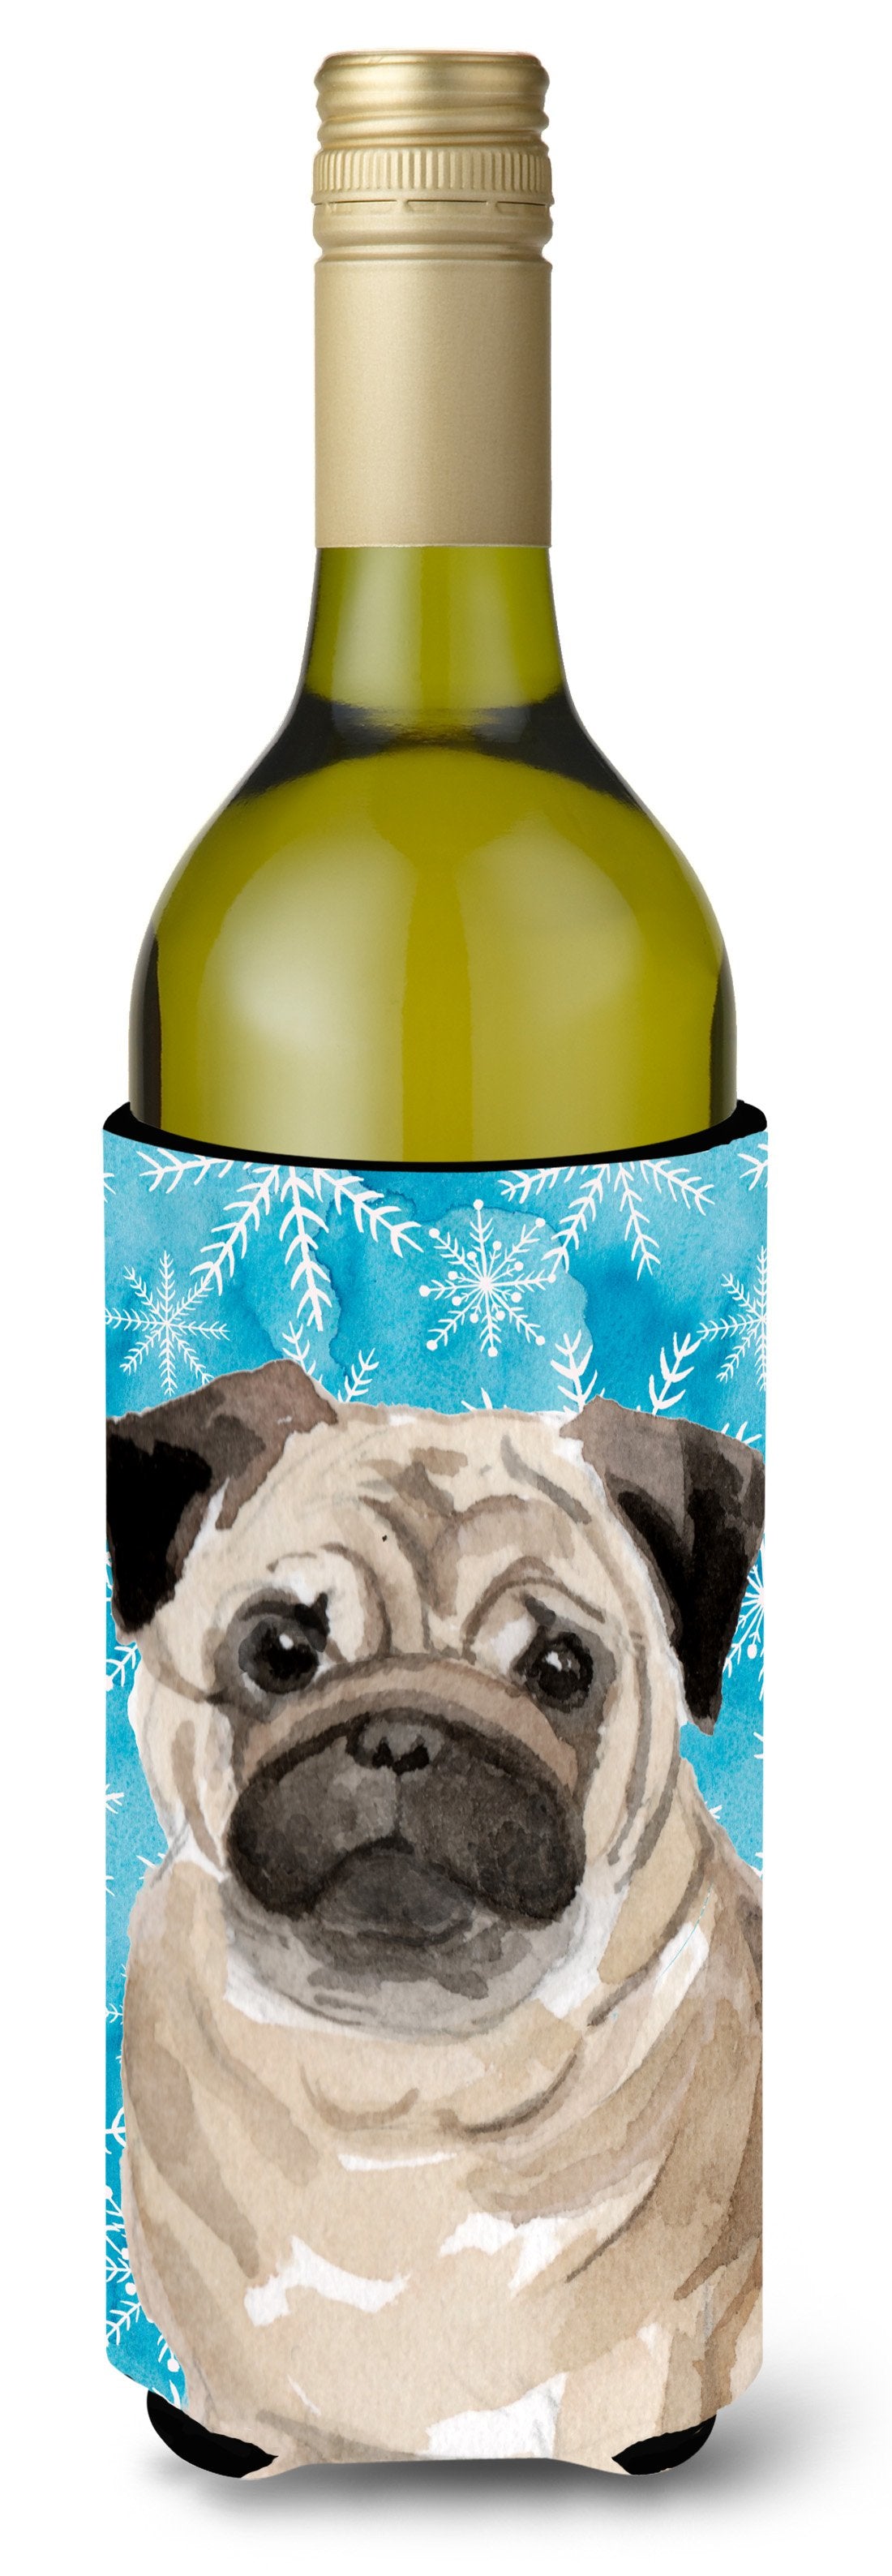 Fawn Pug Winter Wine Bottle Beverge Insulator Hugger BB9461LITERK by Caroline's Treasures